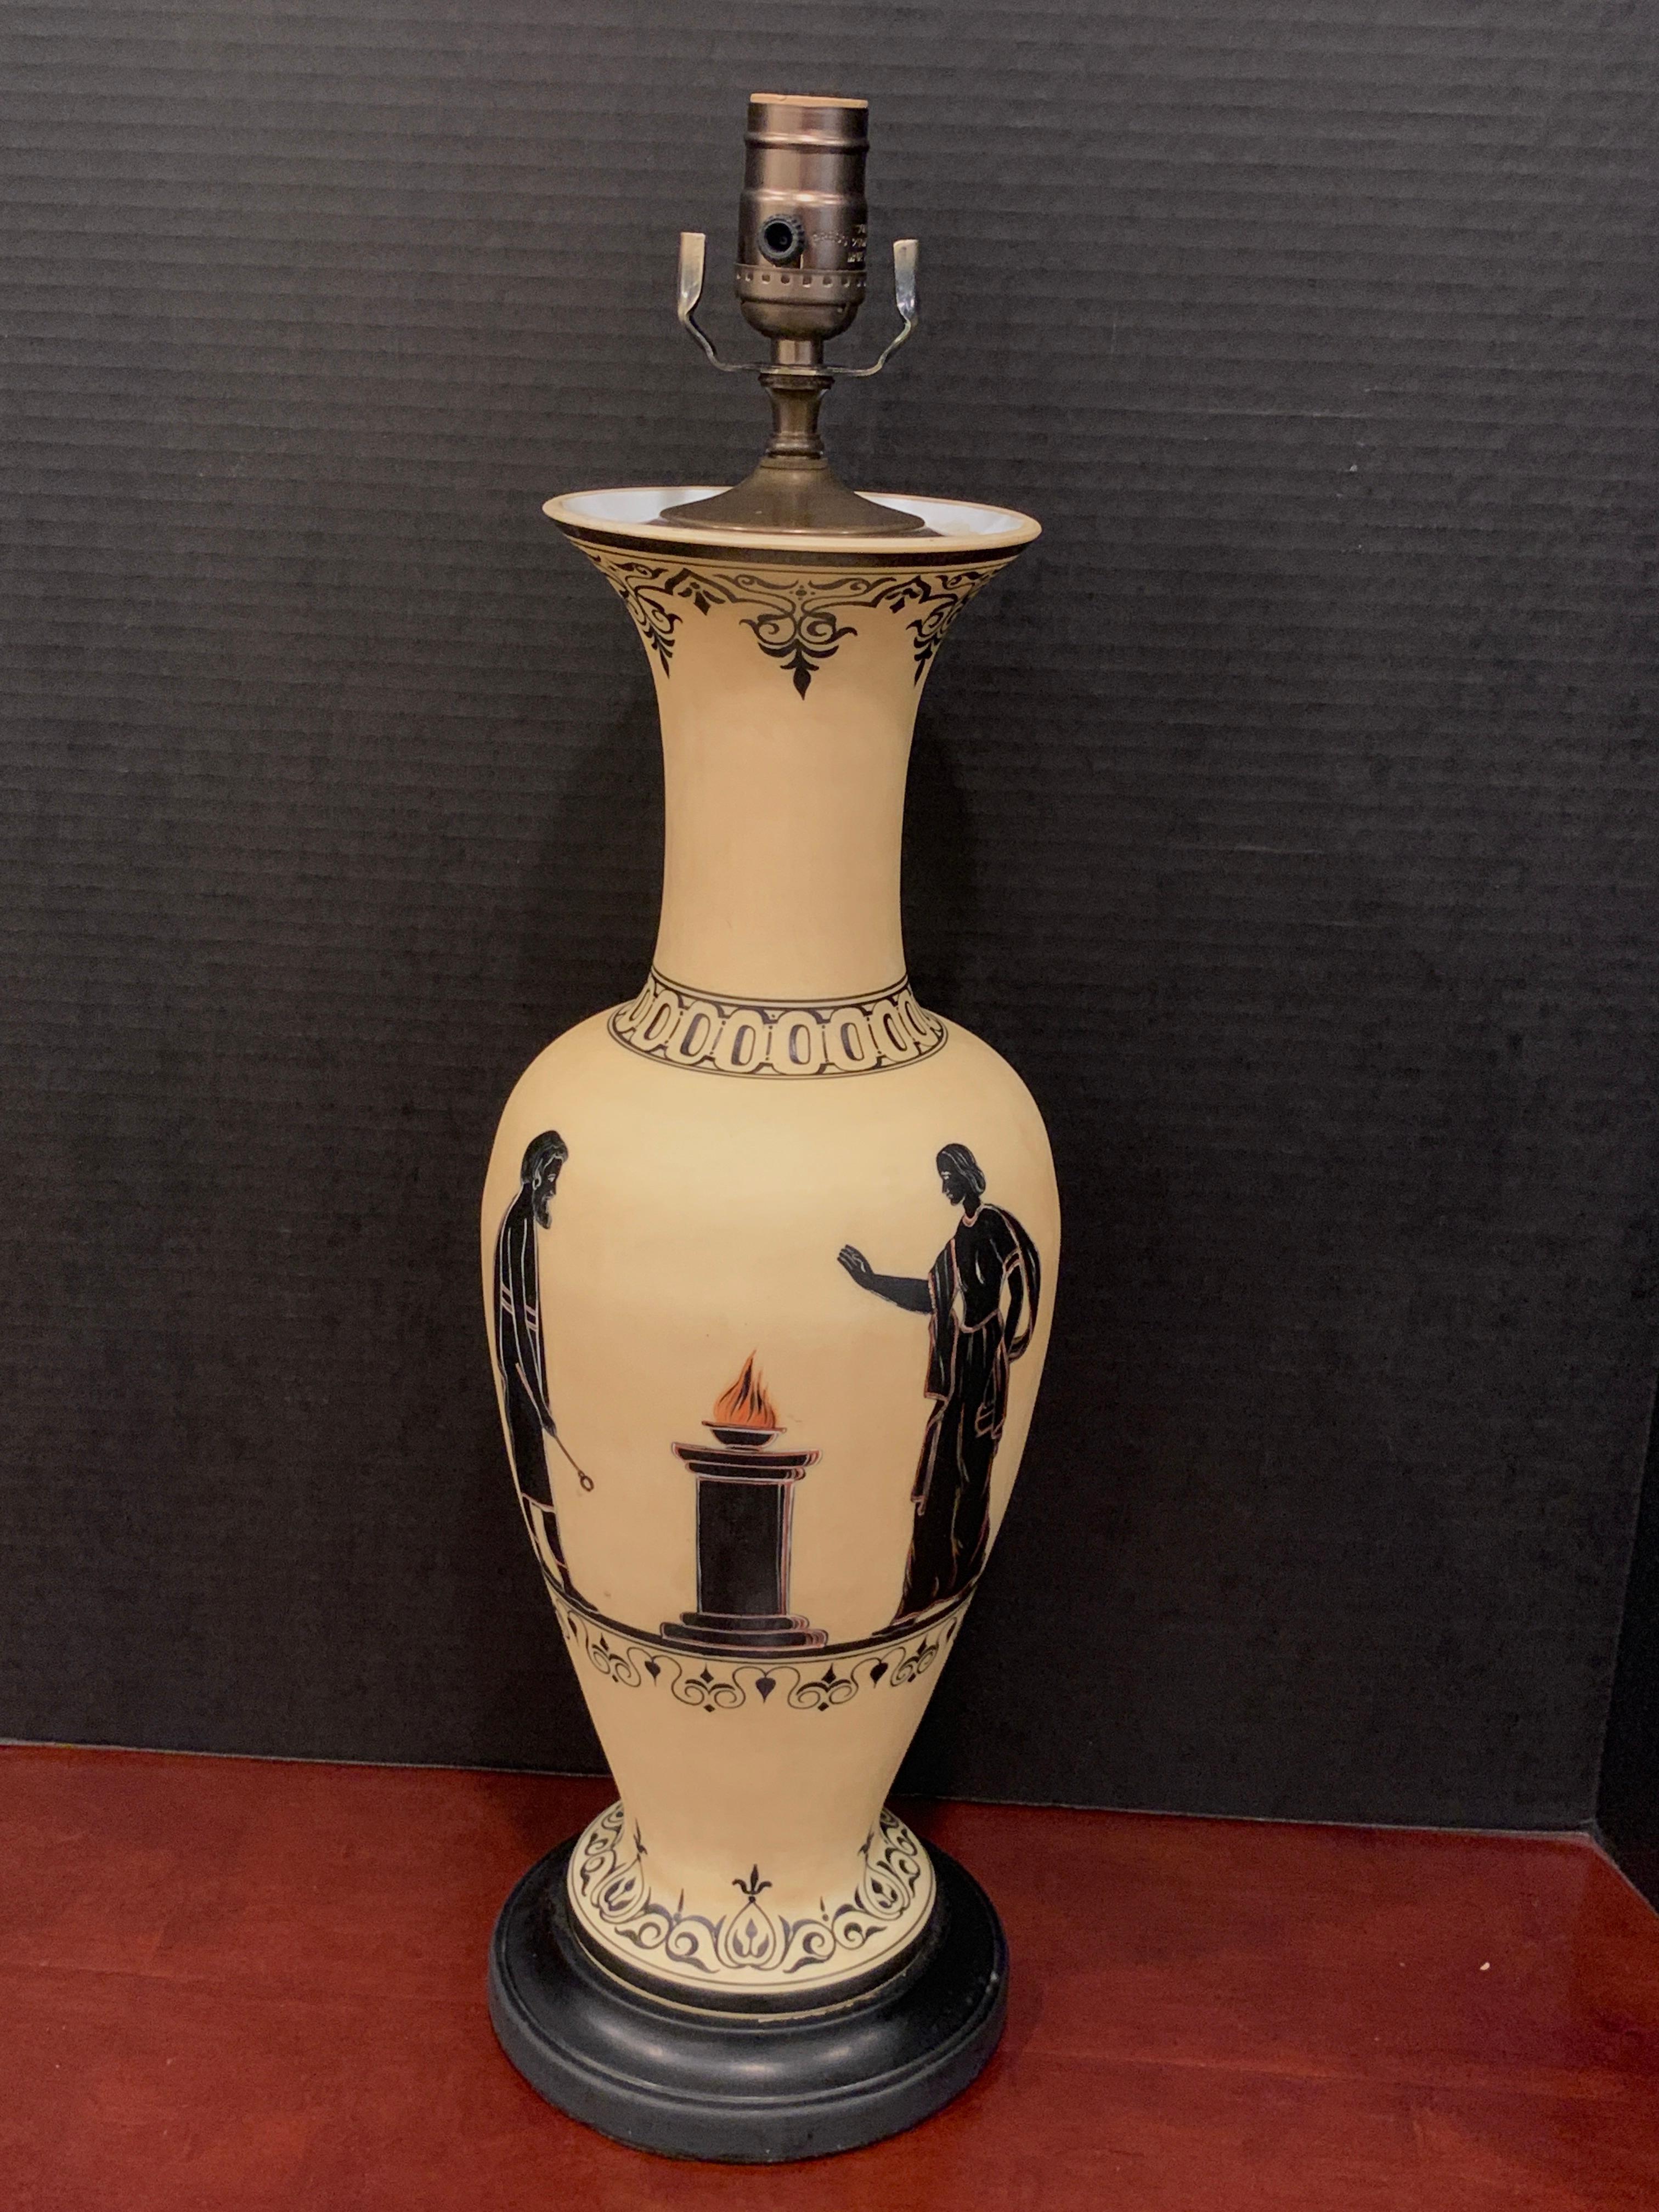 Alt-Paris, Grand Tour Griechische Vase im Exekias-Stil jetzt als Lampe
Gemalt im Stil des Exekias, ca. 540-530 v. Chr., mit hellgelbem Hintergrund und schwarzen Figuren
Maße: 24